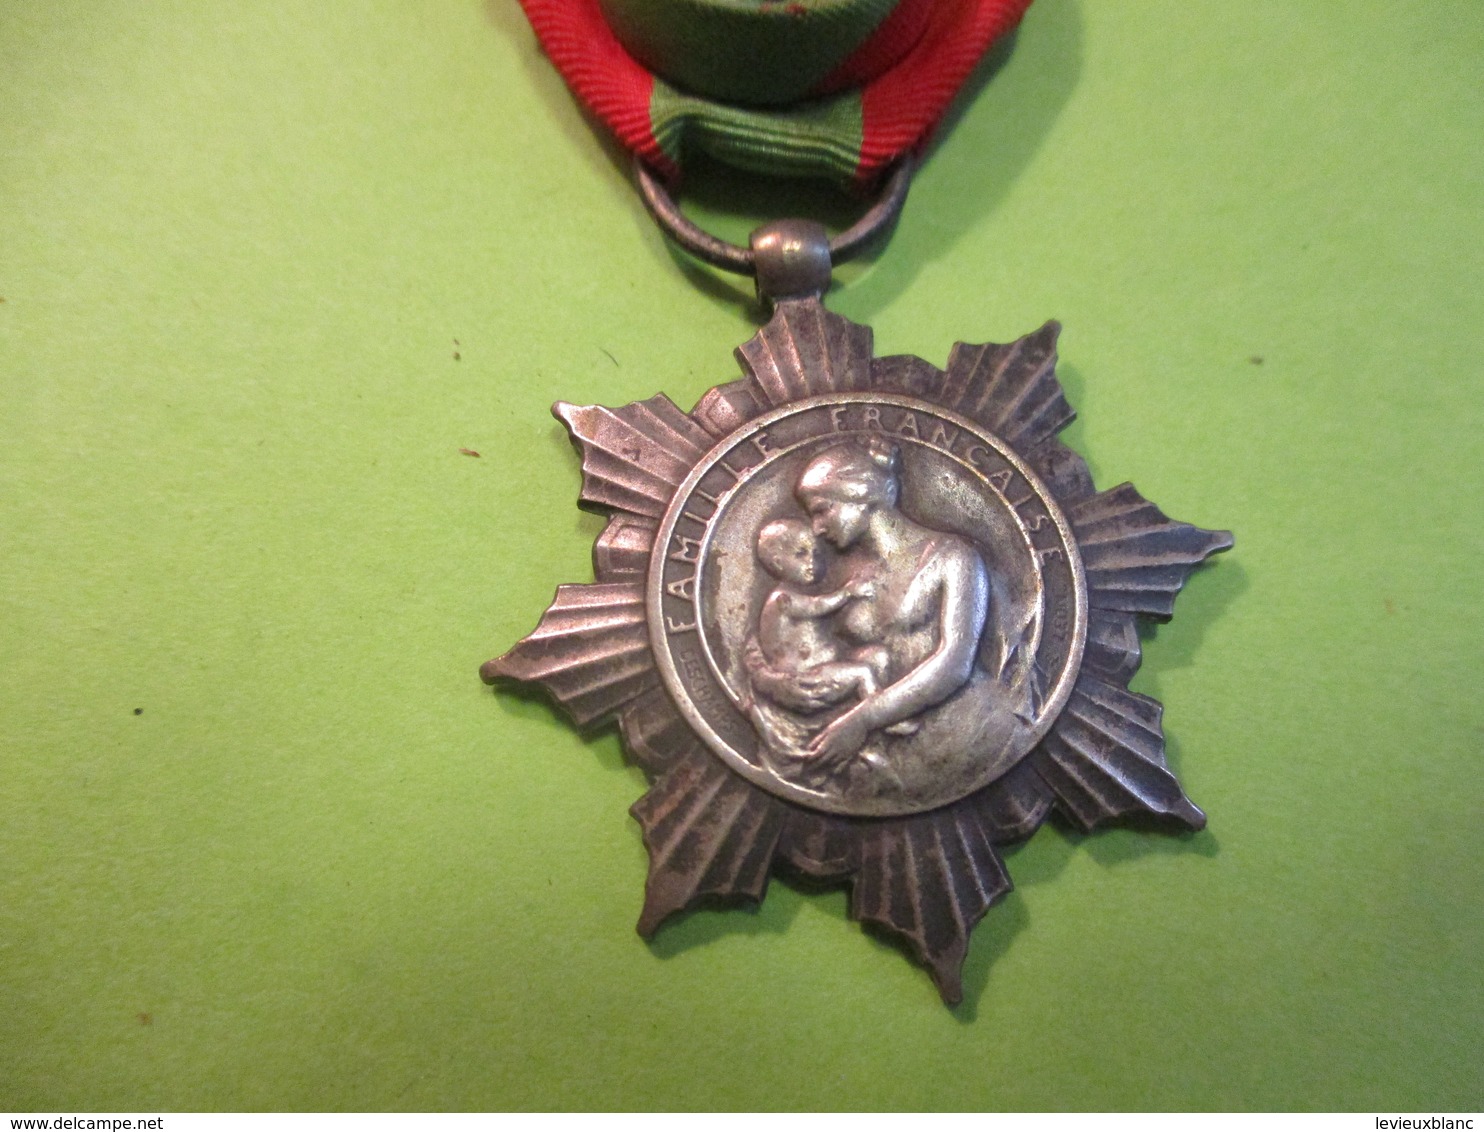 Médaille De La Famille Française/République Française/Ministére De L'Hygiéne/La Patrie Reconnaissante / 1911      MED329 - Frankrijk